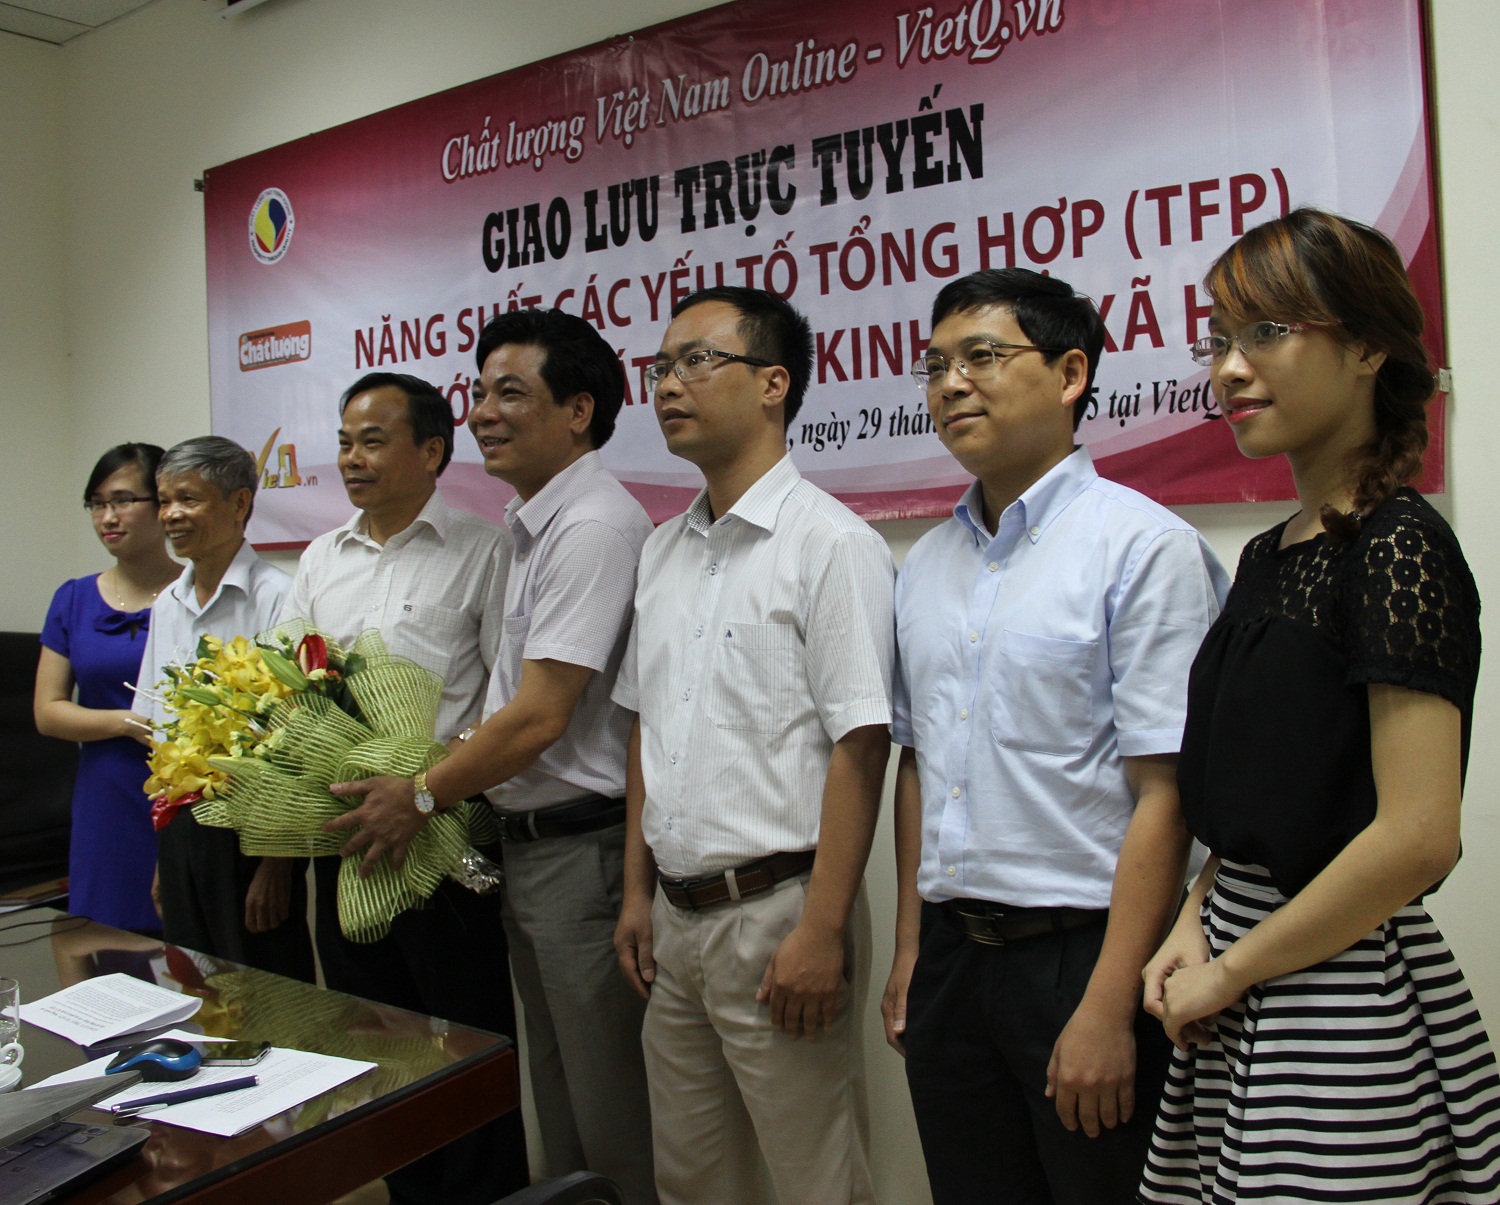 Tổng biên tập Chất lượng Việt Nam (VietQ.vn) Trần Văn Dư (đứng giữa) tặng hoa cho khách mời tham gia Giao lưu trực tuyến